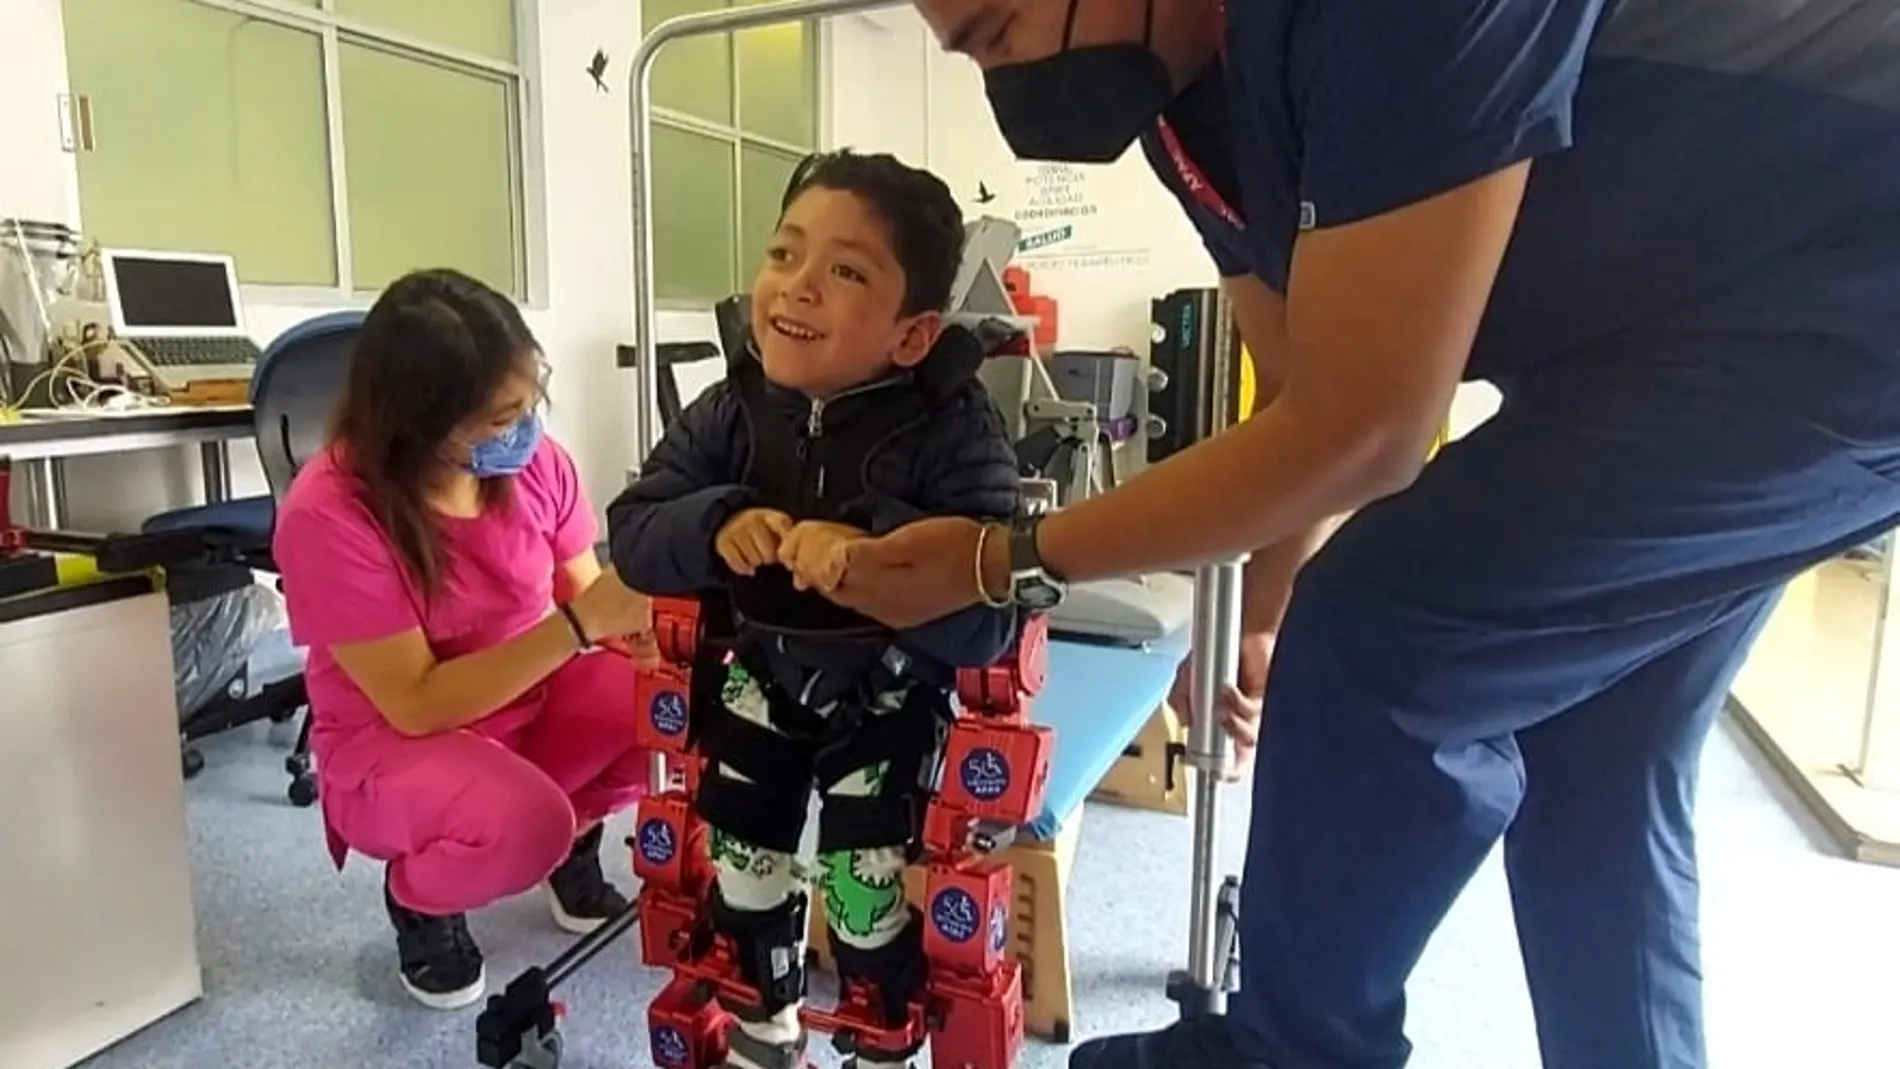 Fernando sonríe tras levantarse por quinta vez en su vida con la ayuda del exoesqueleto Atlas 2030, desarrollado por la empresa española Marsi Bionics con financiación pública del Consejo Superior de Investigaciones Científicas (CSIC), en la clínica de APAC en Ciudad de México